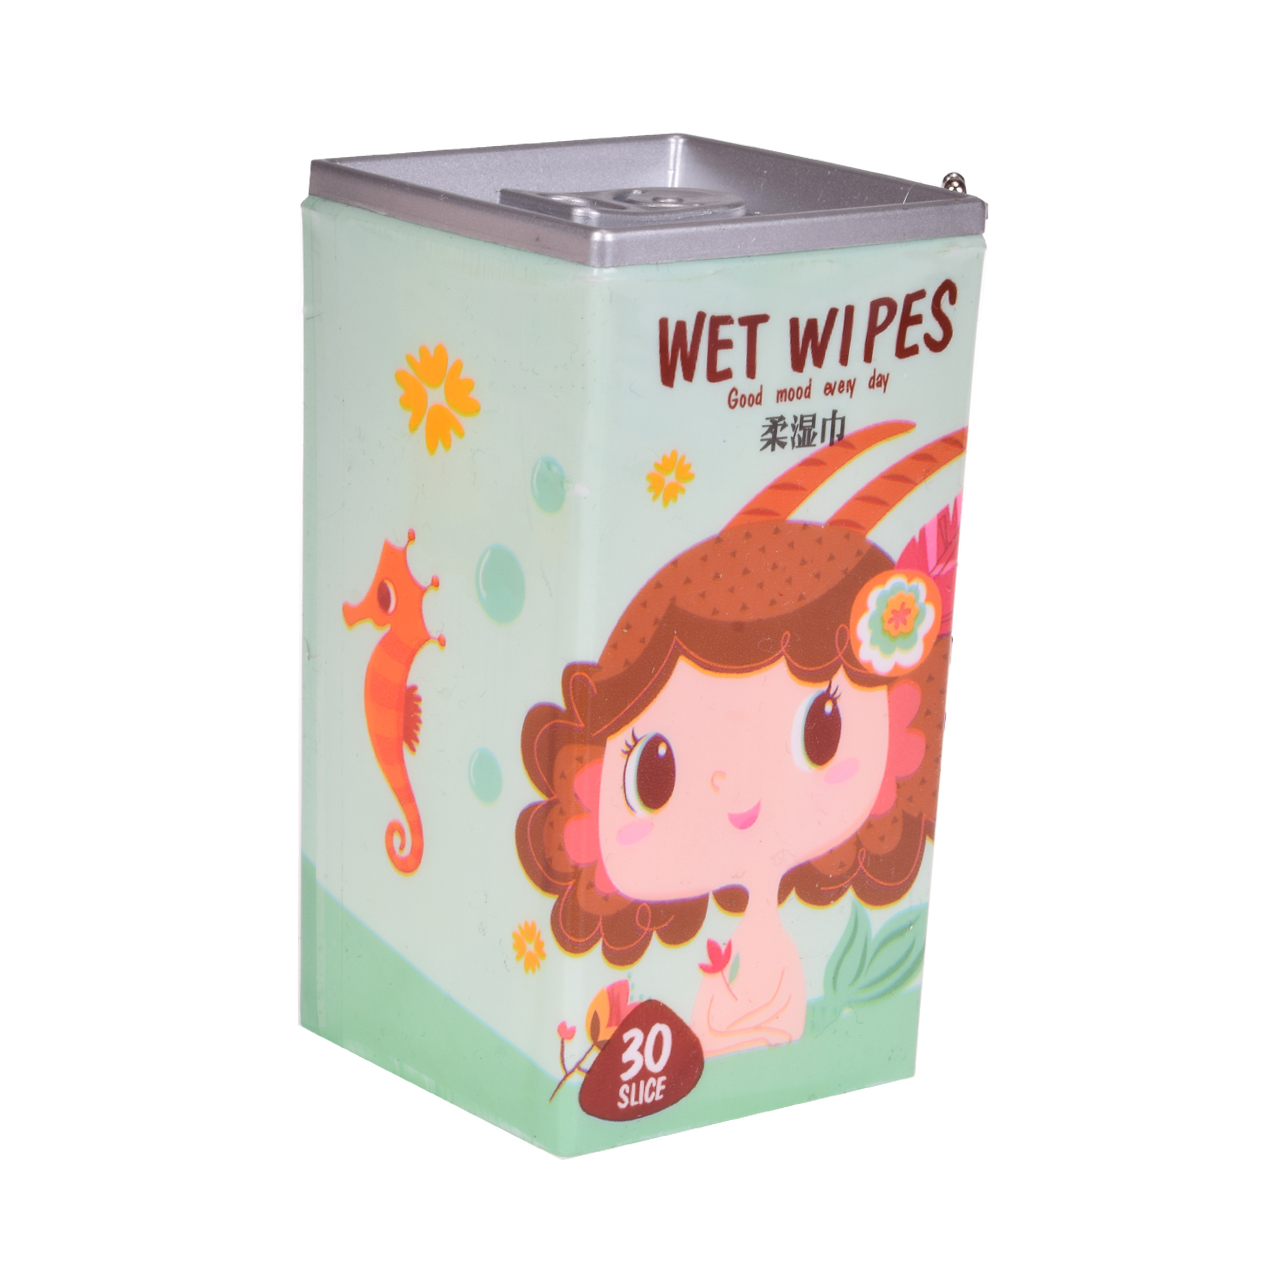 دستمال مرطوب مدل wet wipes 4 بسته 30 عددی